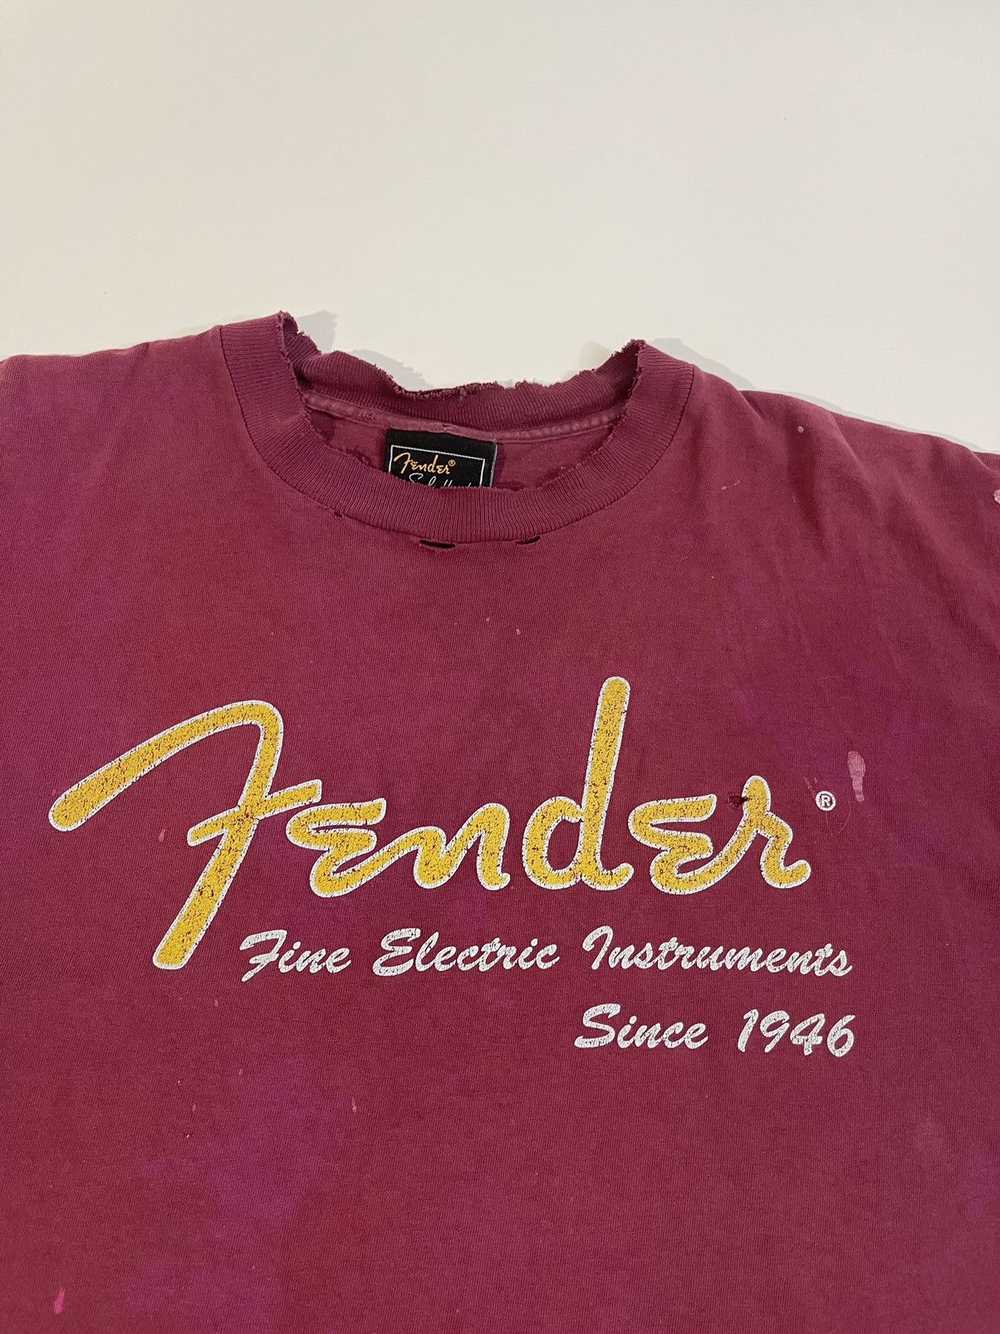 Vintage Vintage Fender T-Shirt - image 2